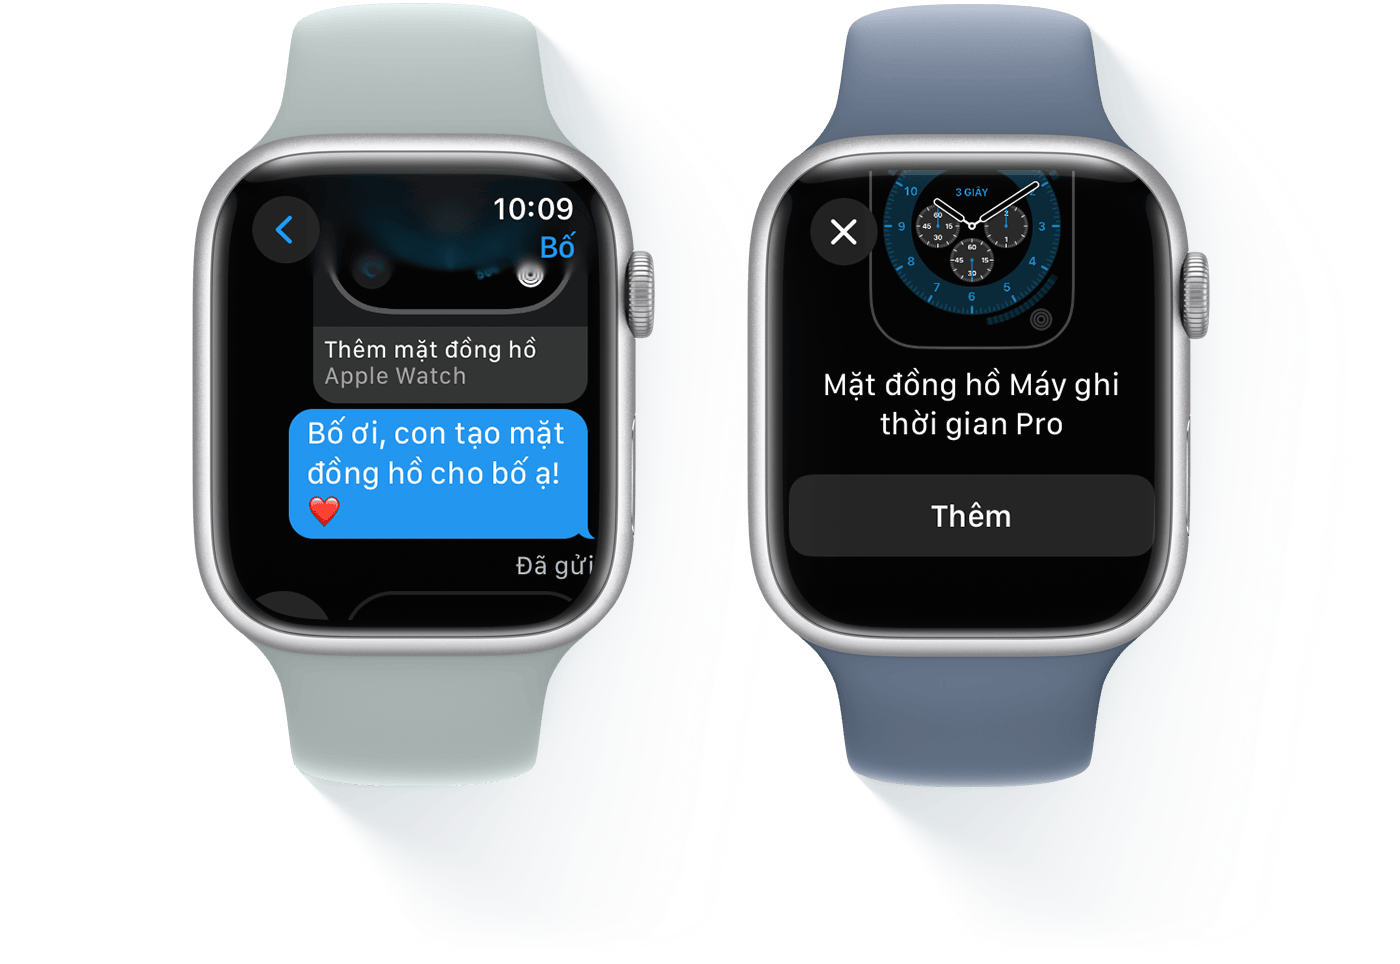 Hai chiếc Apple Watch, một chiếc hiển thị cuộc trò chuyện bằng tin nhắn văn bản, chiếc còn lại hiển thị Mặt đồng hồ Máy ghi thời gian Pro